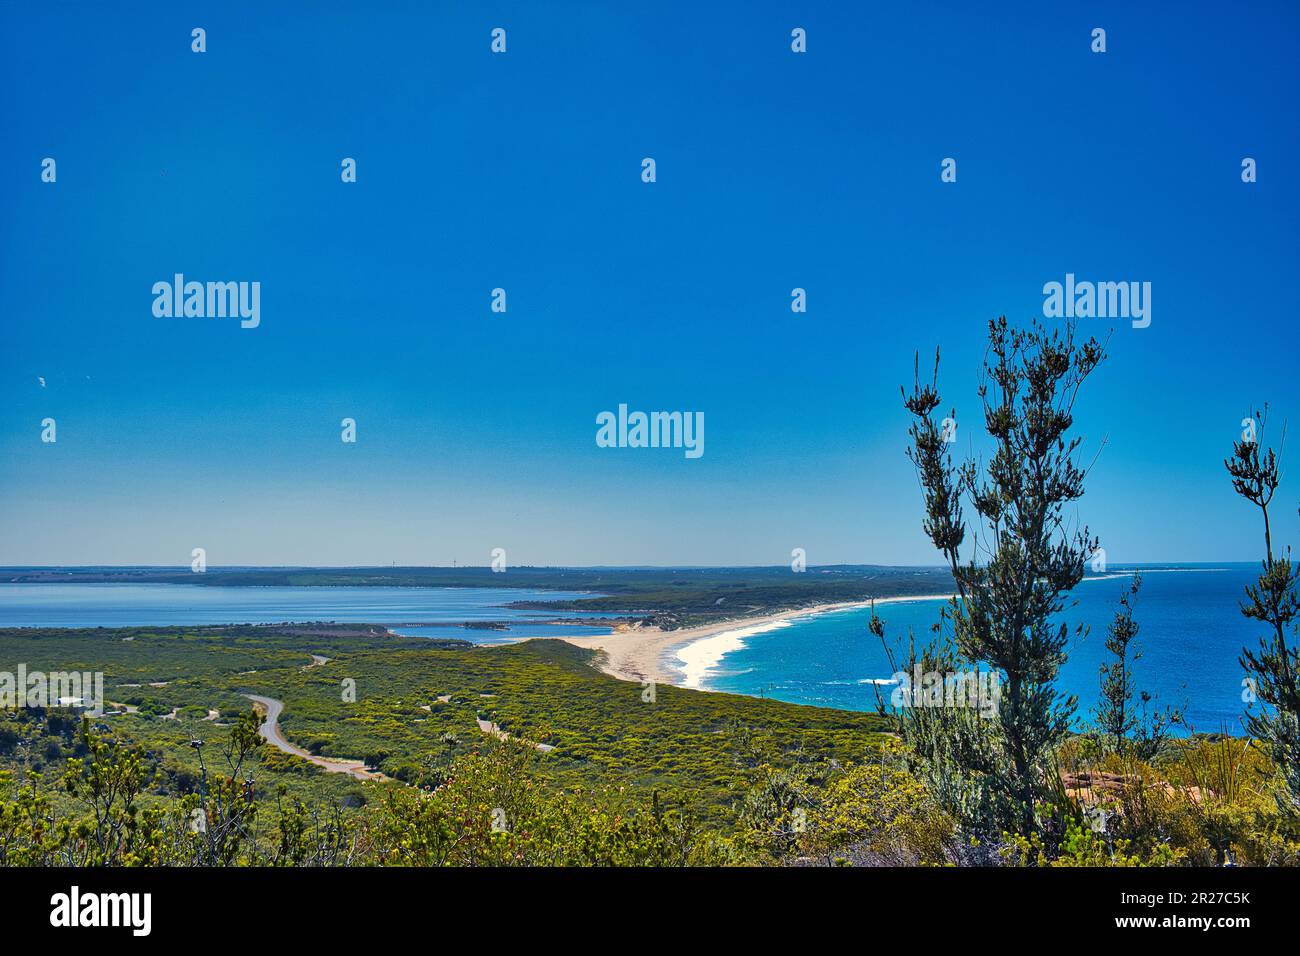 Vista di Culham Beach e Culham Inlet, un lago salato costiero con grande significato ecologico vicino Hopetoun, sulla costa meridionale dell'Australia occidentale Foto Stock